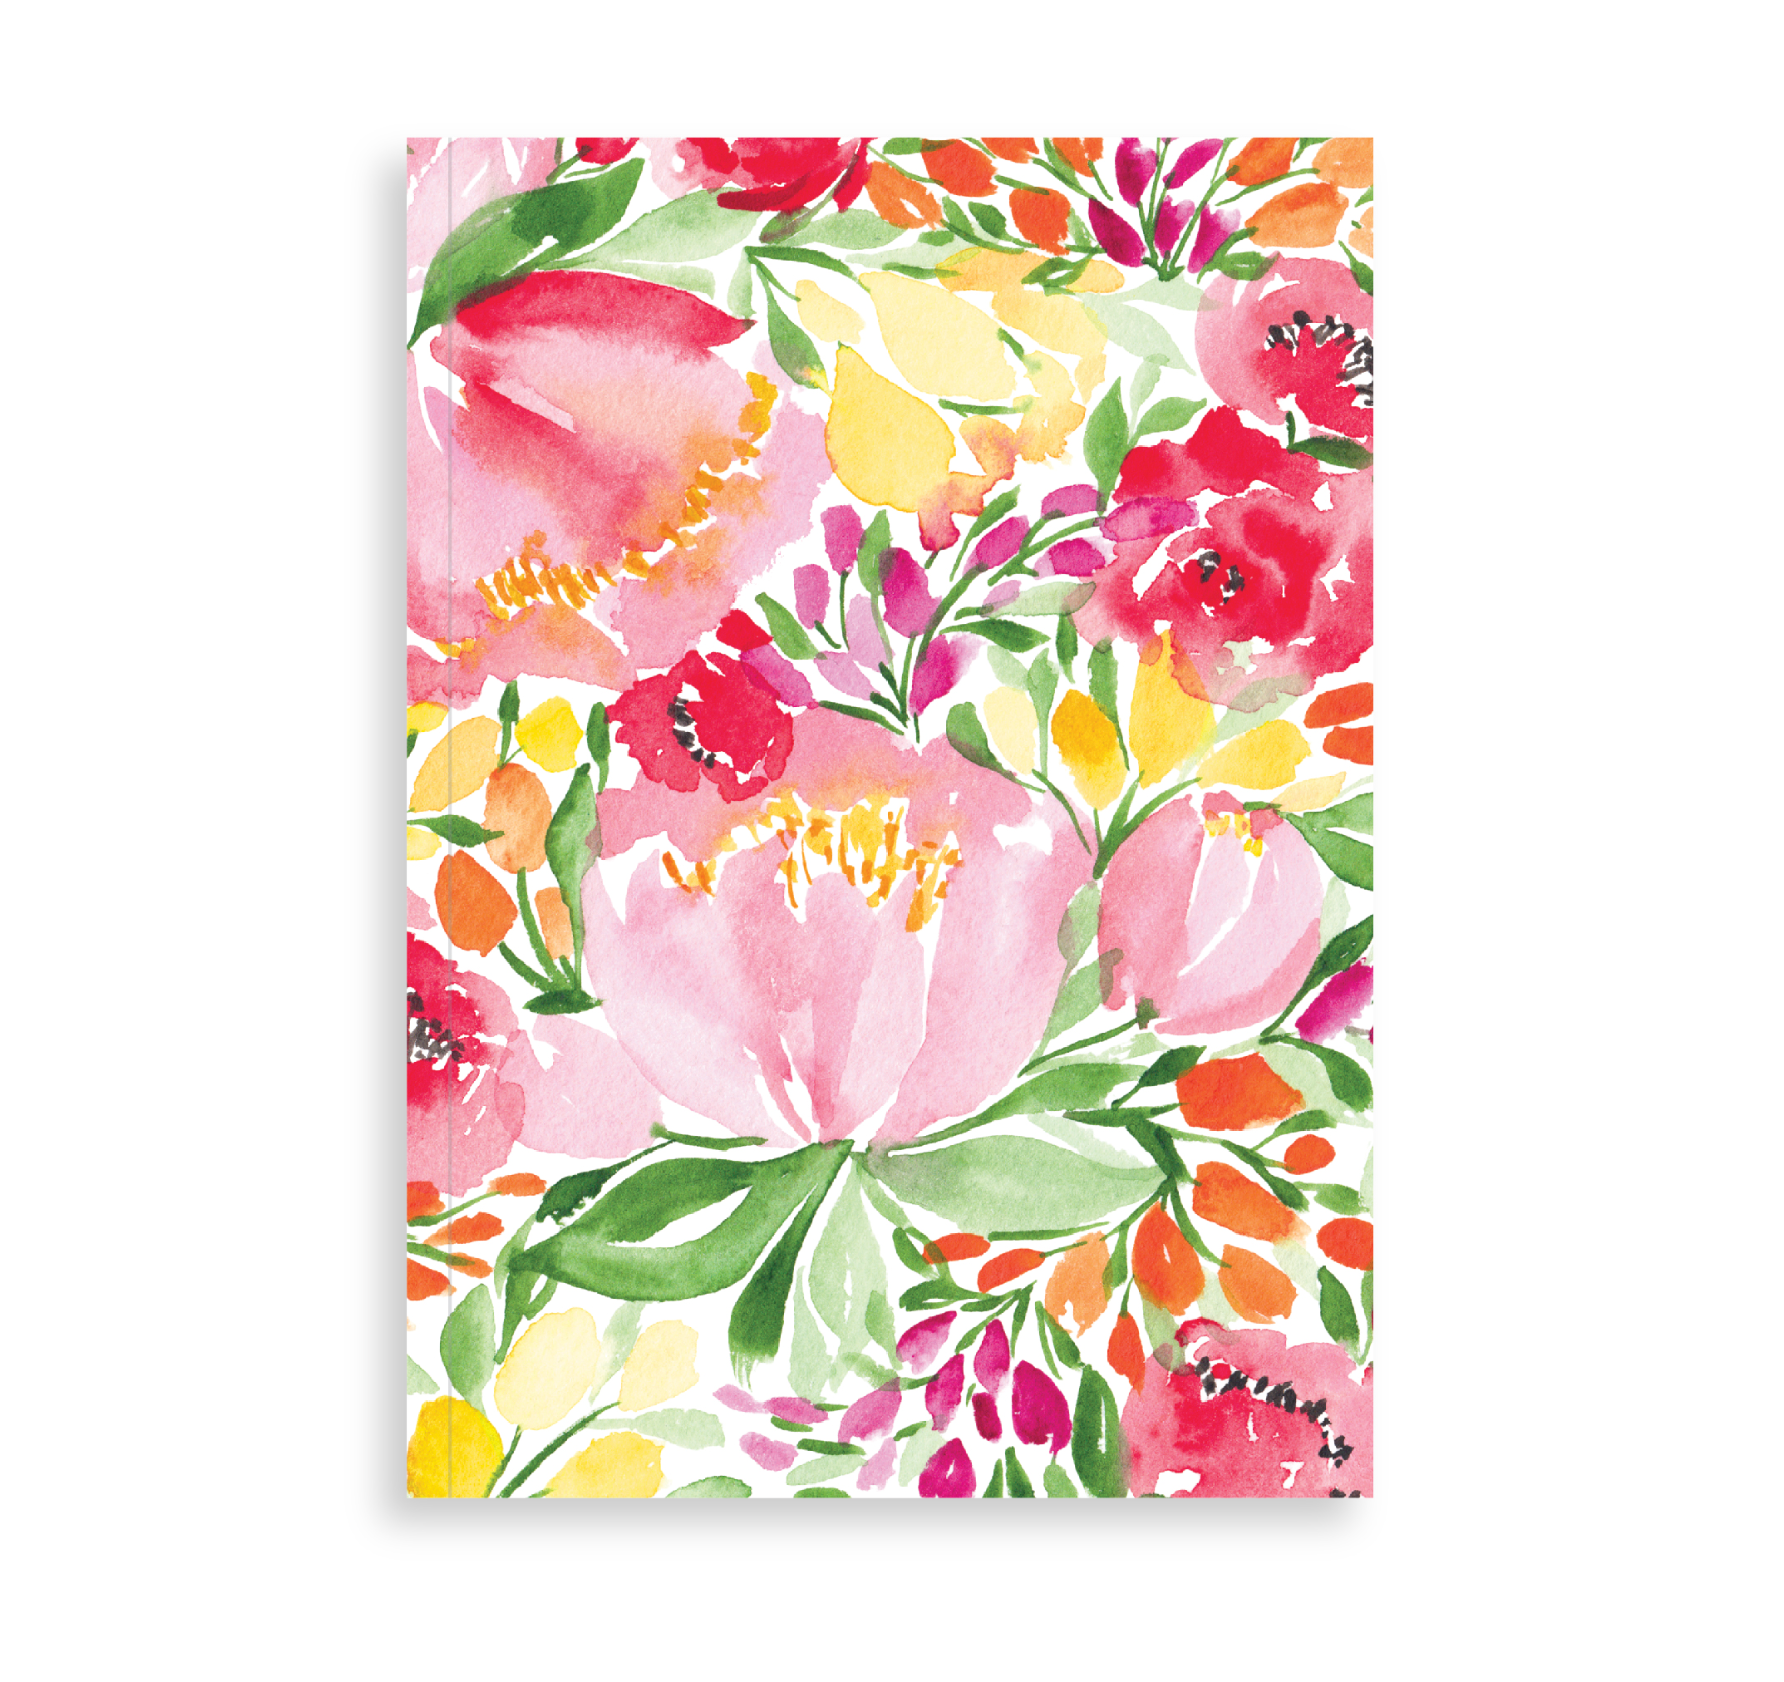 Summer Florals Notebook